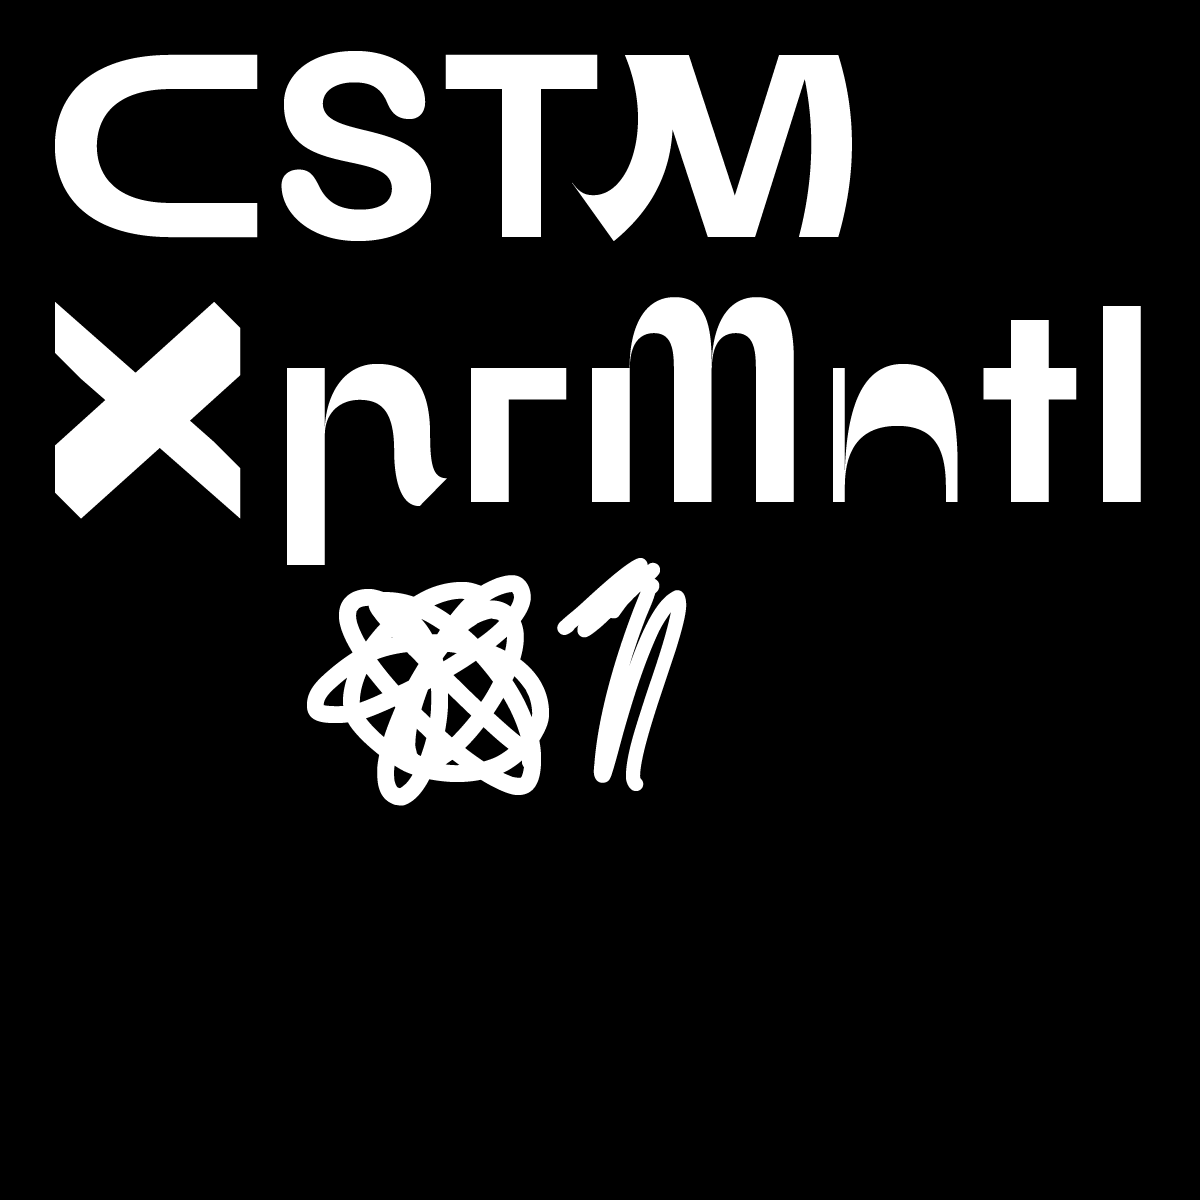 Font CSTM XPRMNTL 01